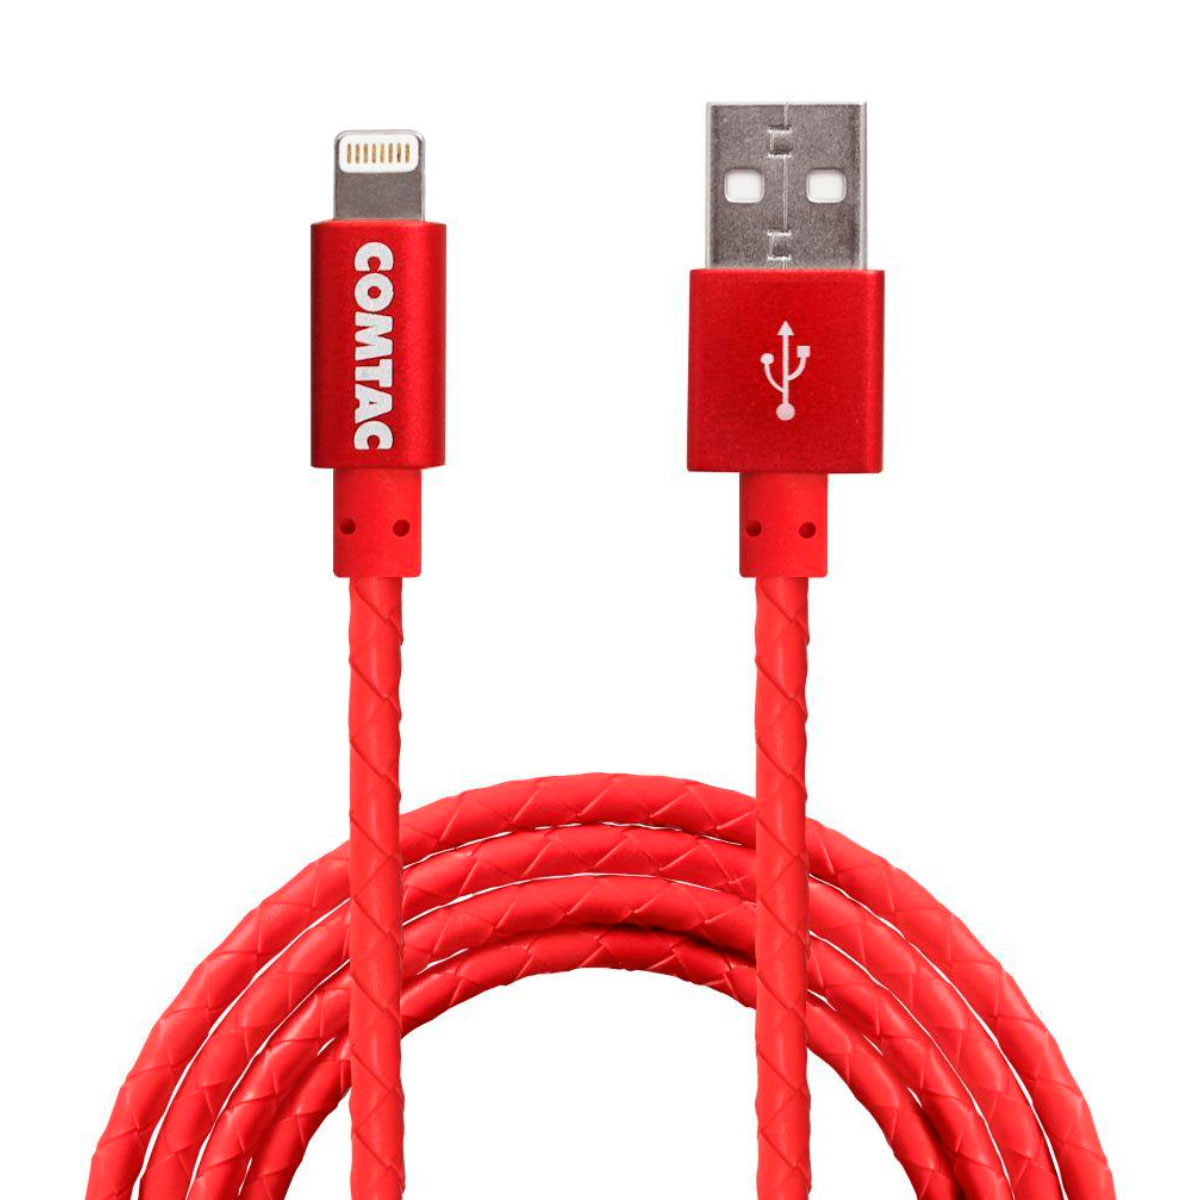 Cabo Lightning para USB - com Certificação MFI - 1 metro - Vermelho - Comtac 9369